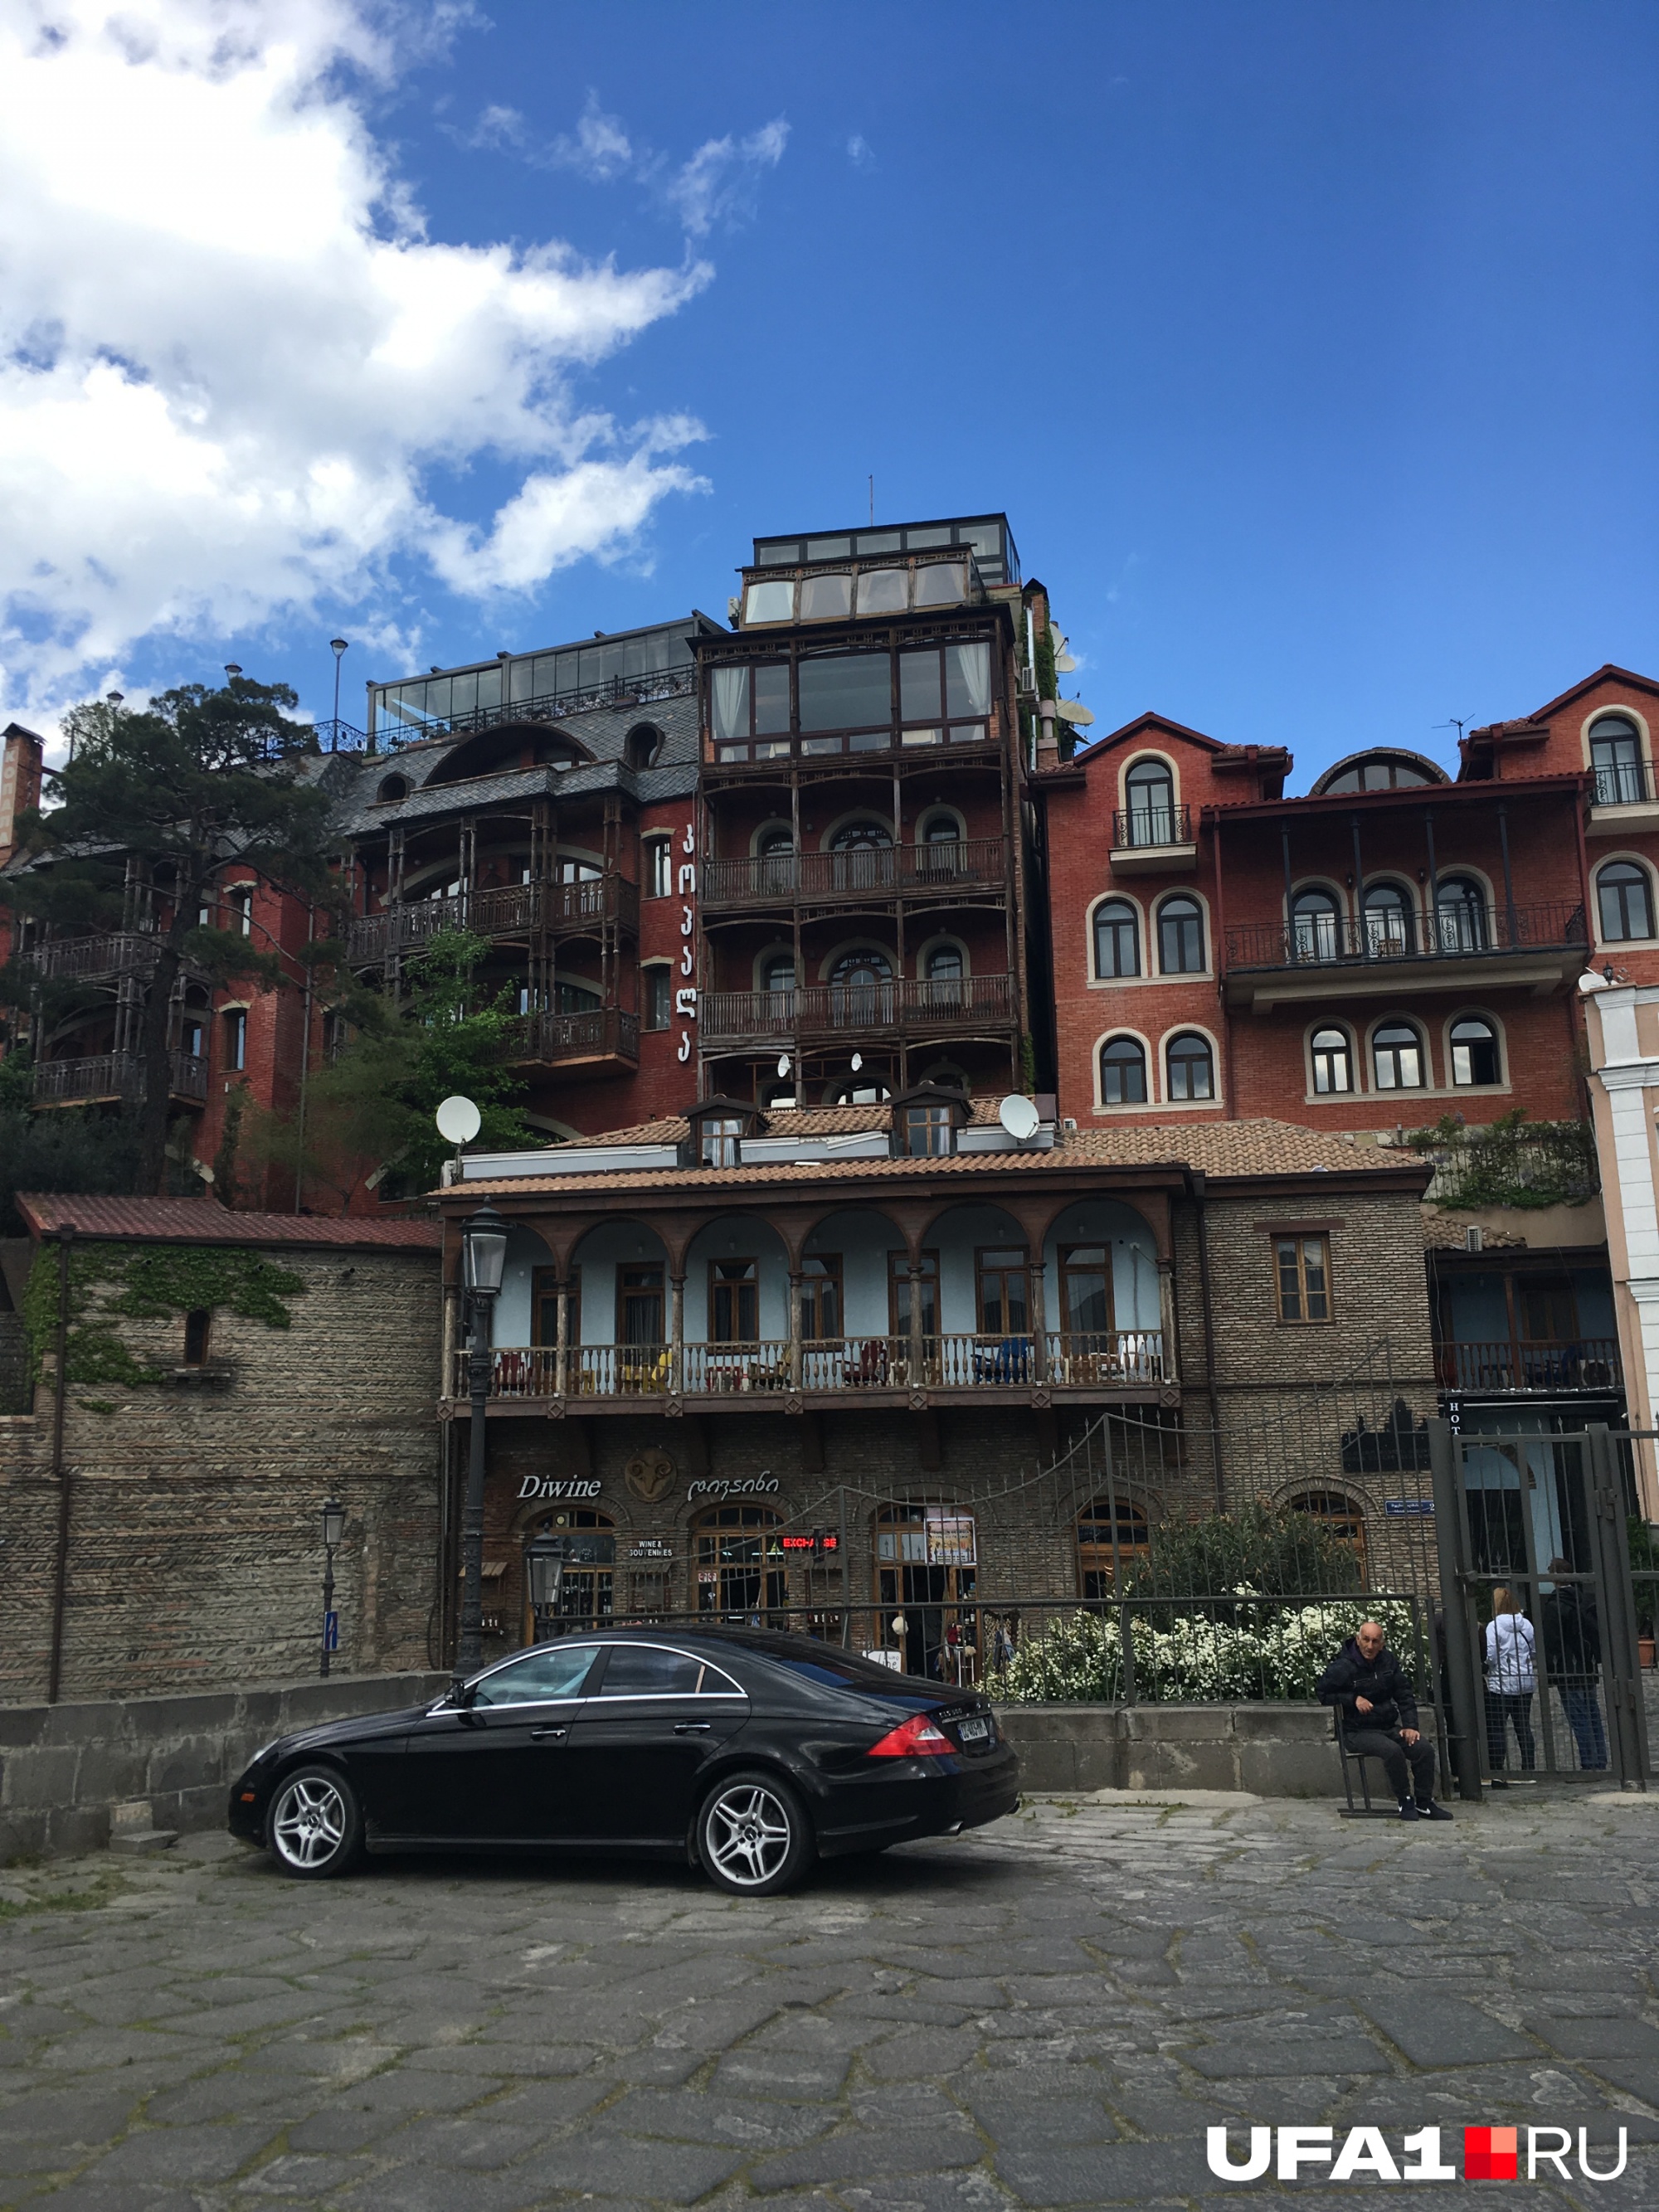 Отдельное удовольствие — наблюдать прекрасные домики Тбилиси и Батуми